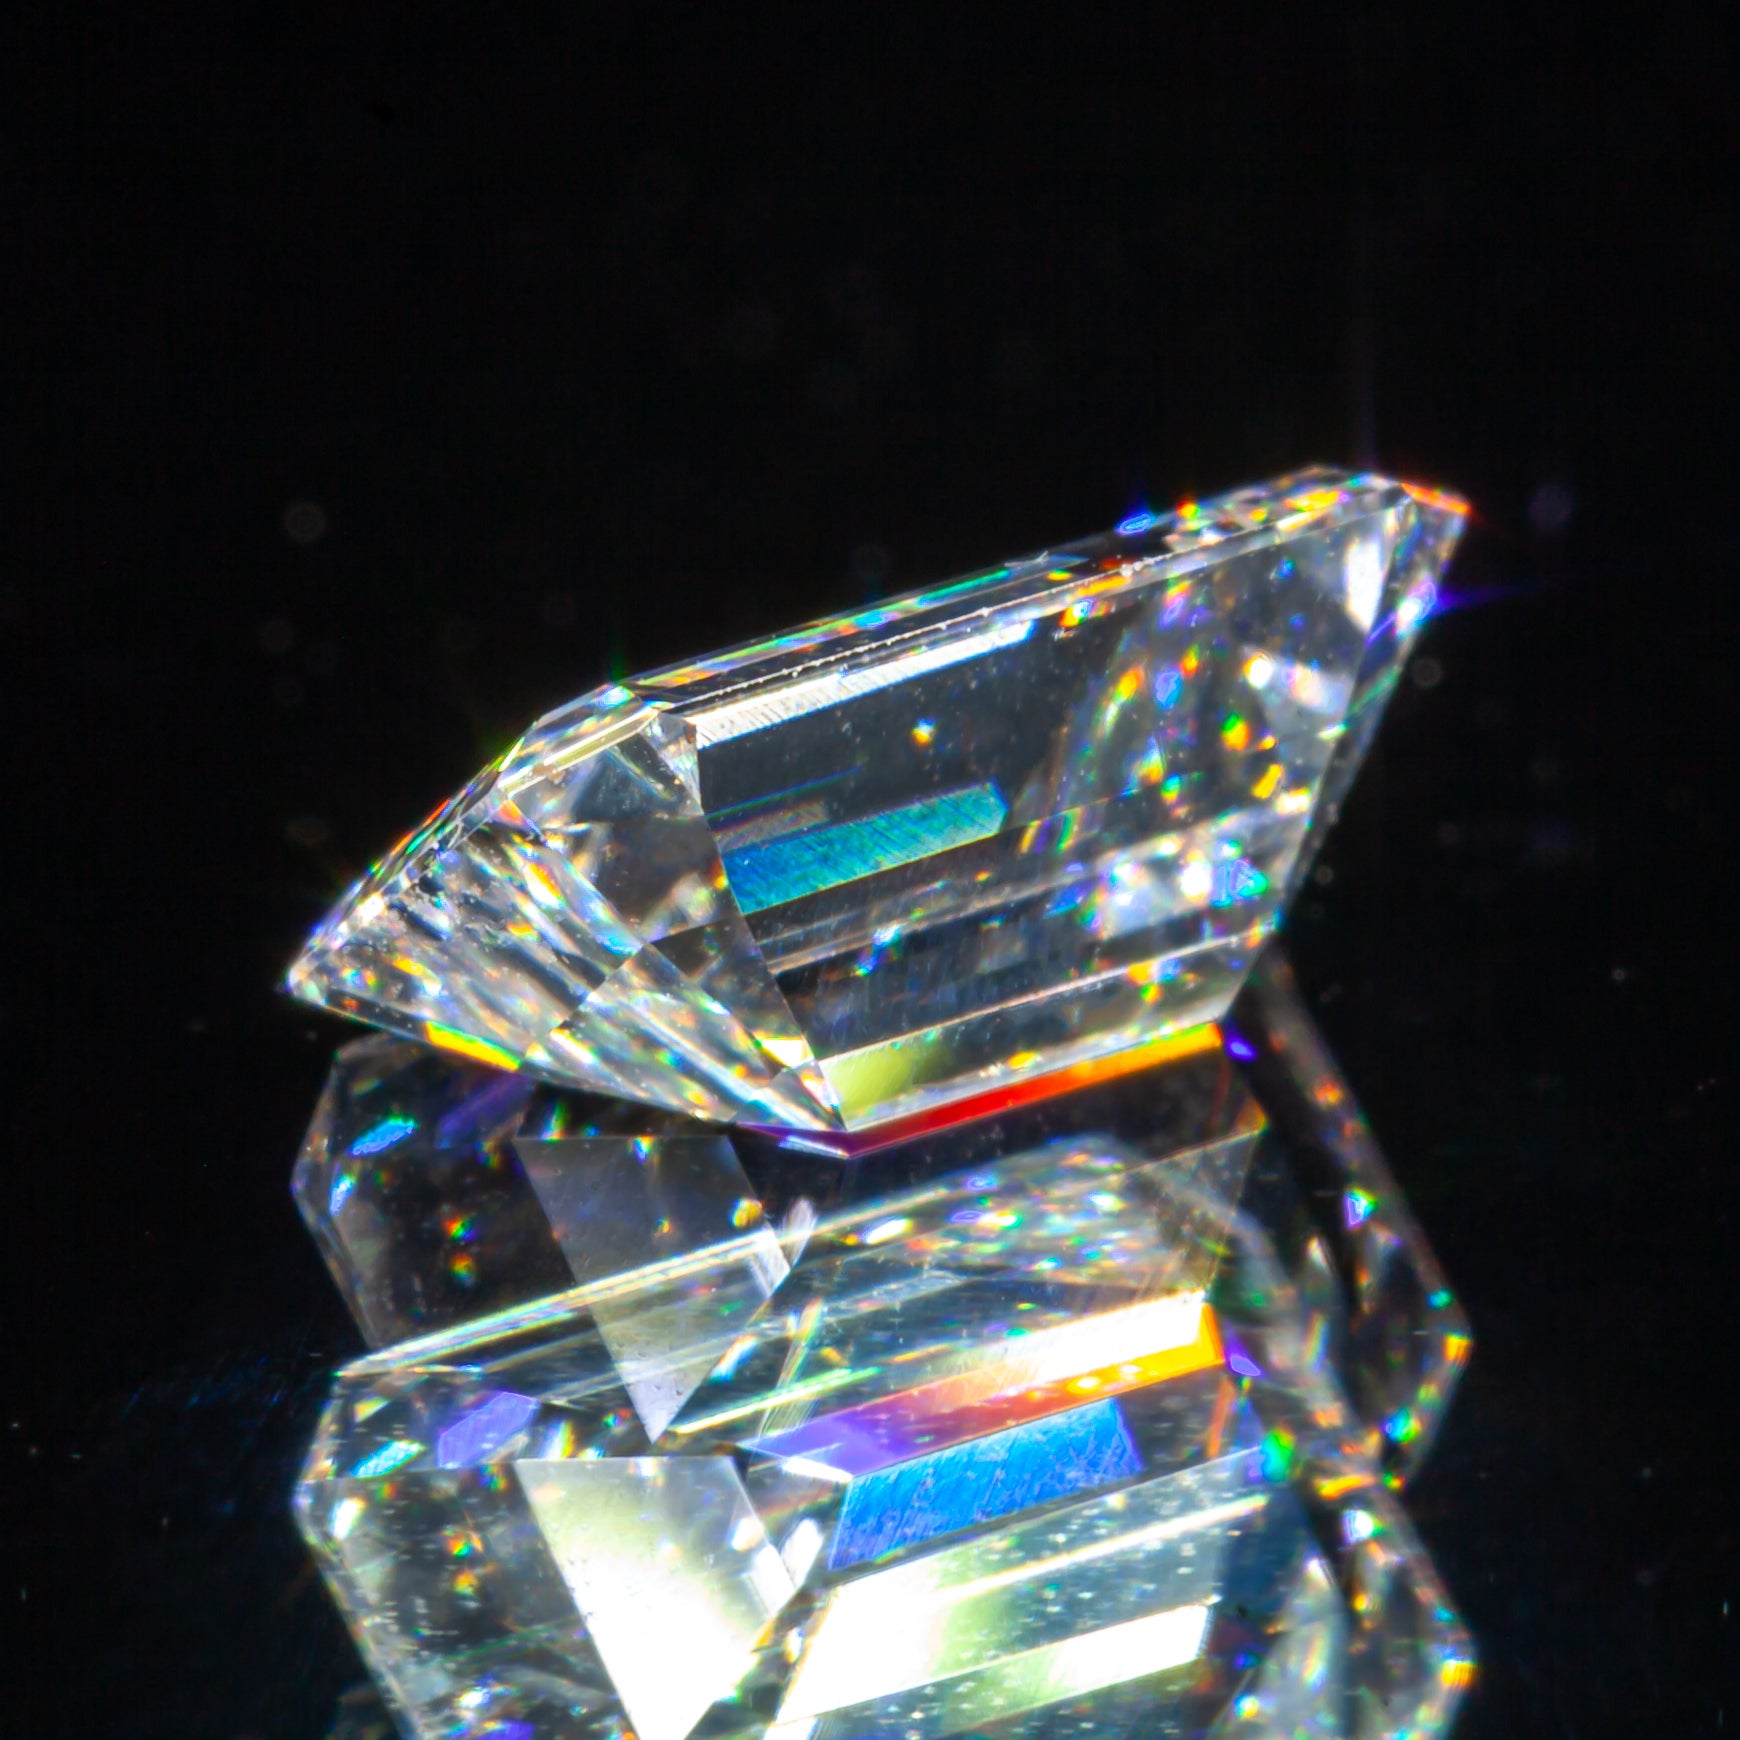 0.87 Carat Loose D / VS1 Emerald Cut Diamond certifié GIA

Informations générales sur le diamant
Taille du diamant : Taille émeraude
Dimensions : 7.43  x  4.81  -  2.82

Résultats de la classification des diamants
Poids en carats : 0,87
Grade de